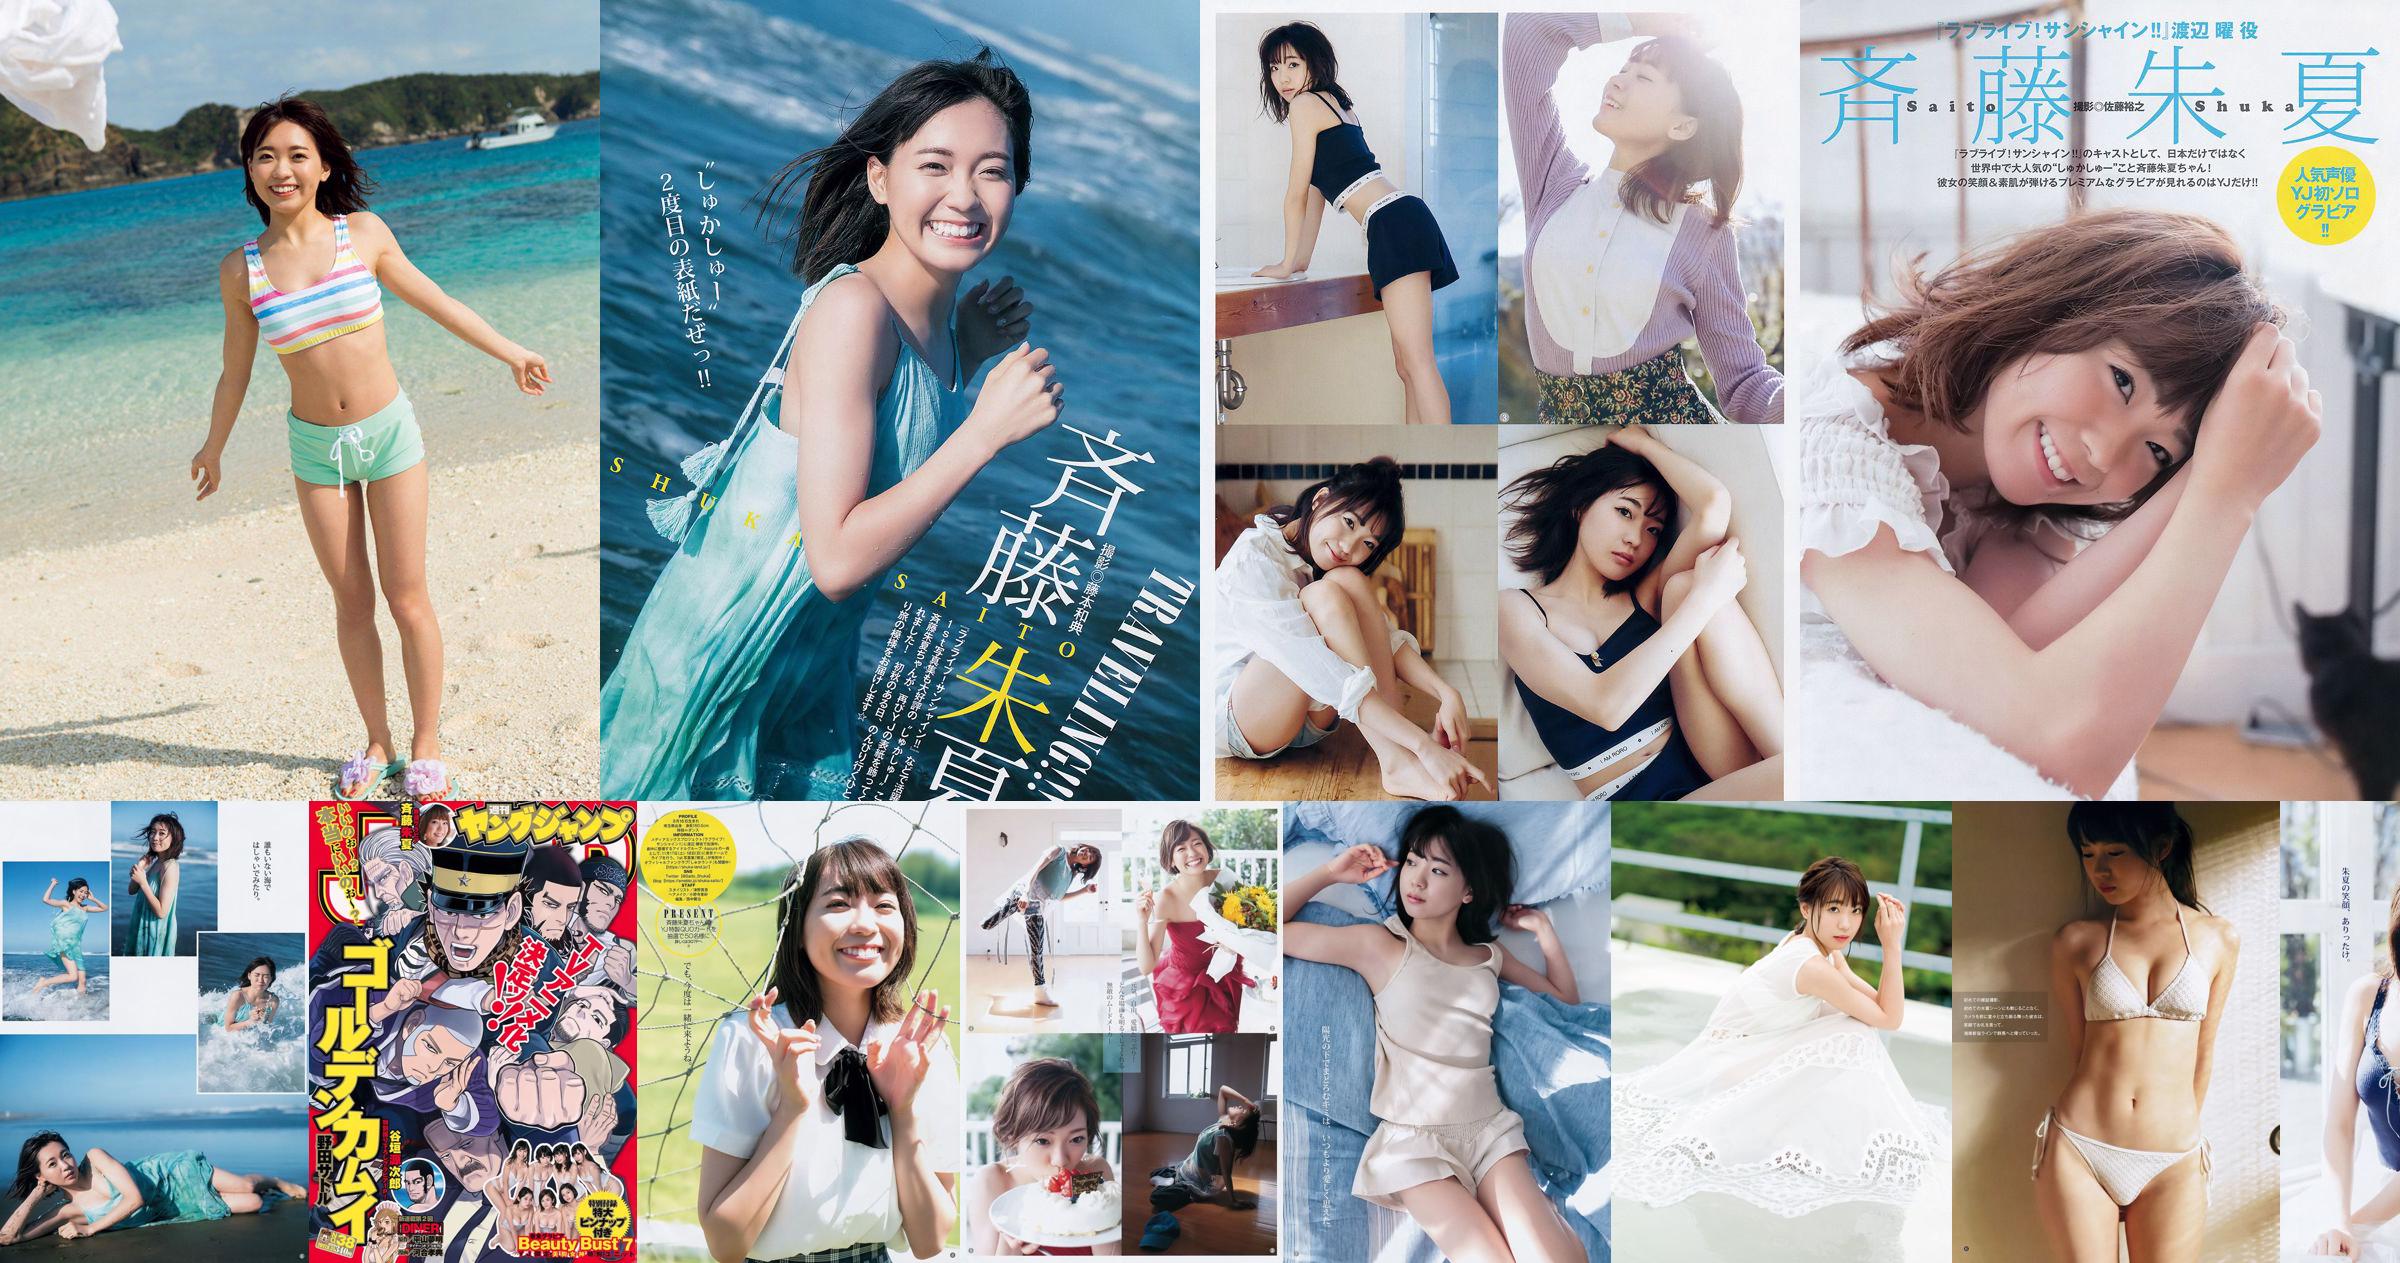 Shuka Saito Beauty Bust 7 [Weekly Young Jump] 2017 No.38 Photo No.898d0c Page 4